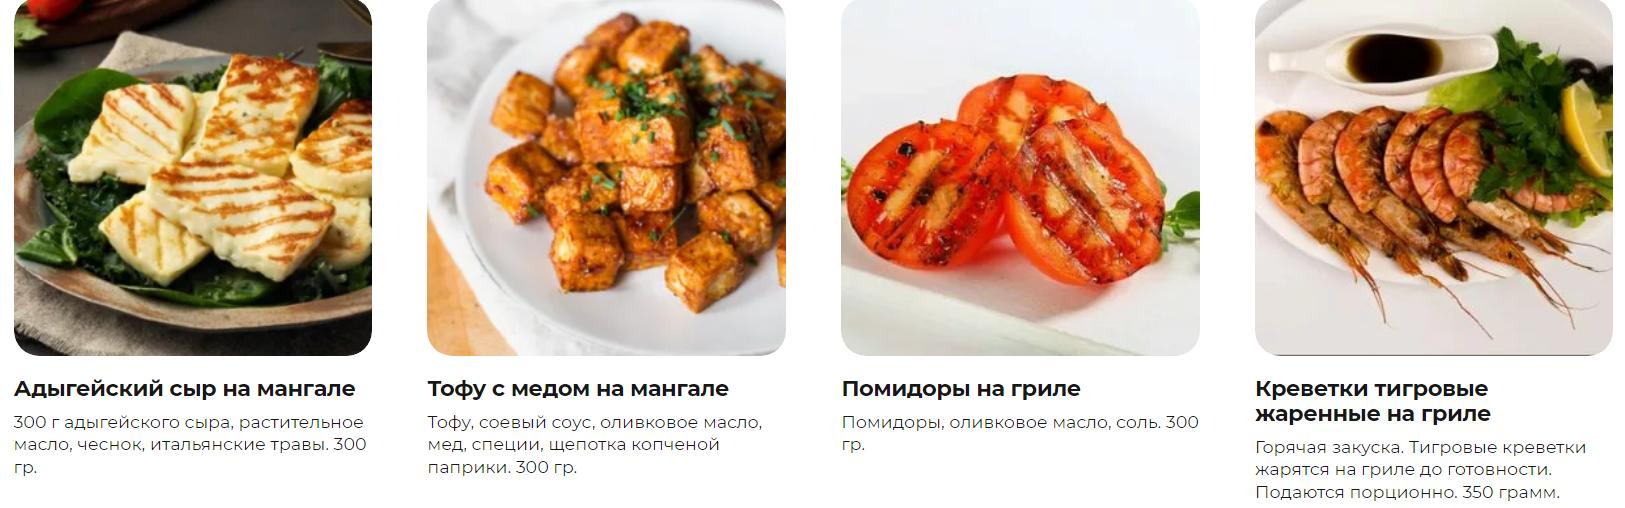 Сервис кейтеринга и доставки еды в Москве и МО: как организовать праздник